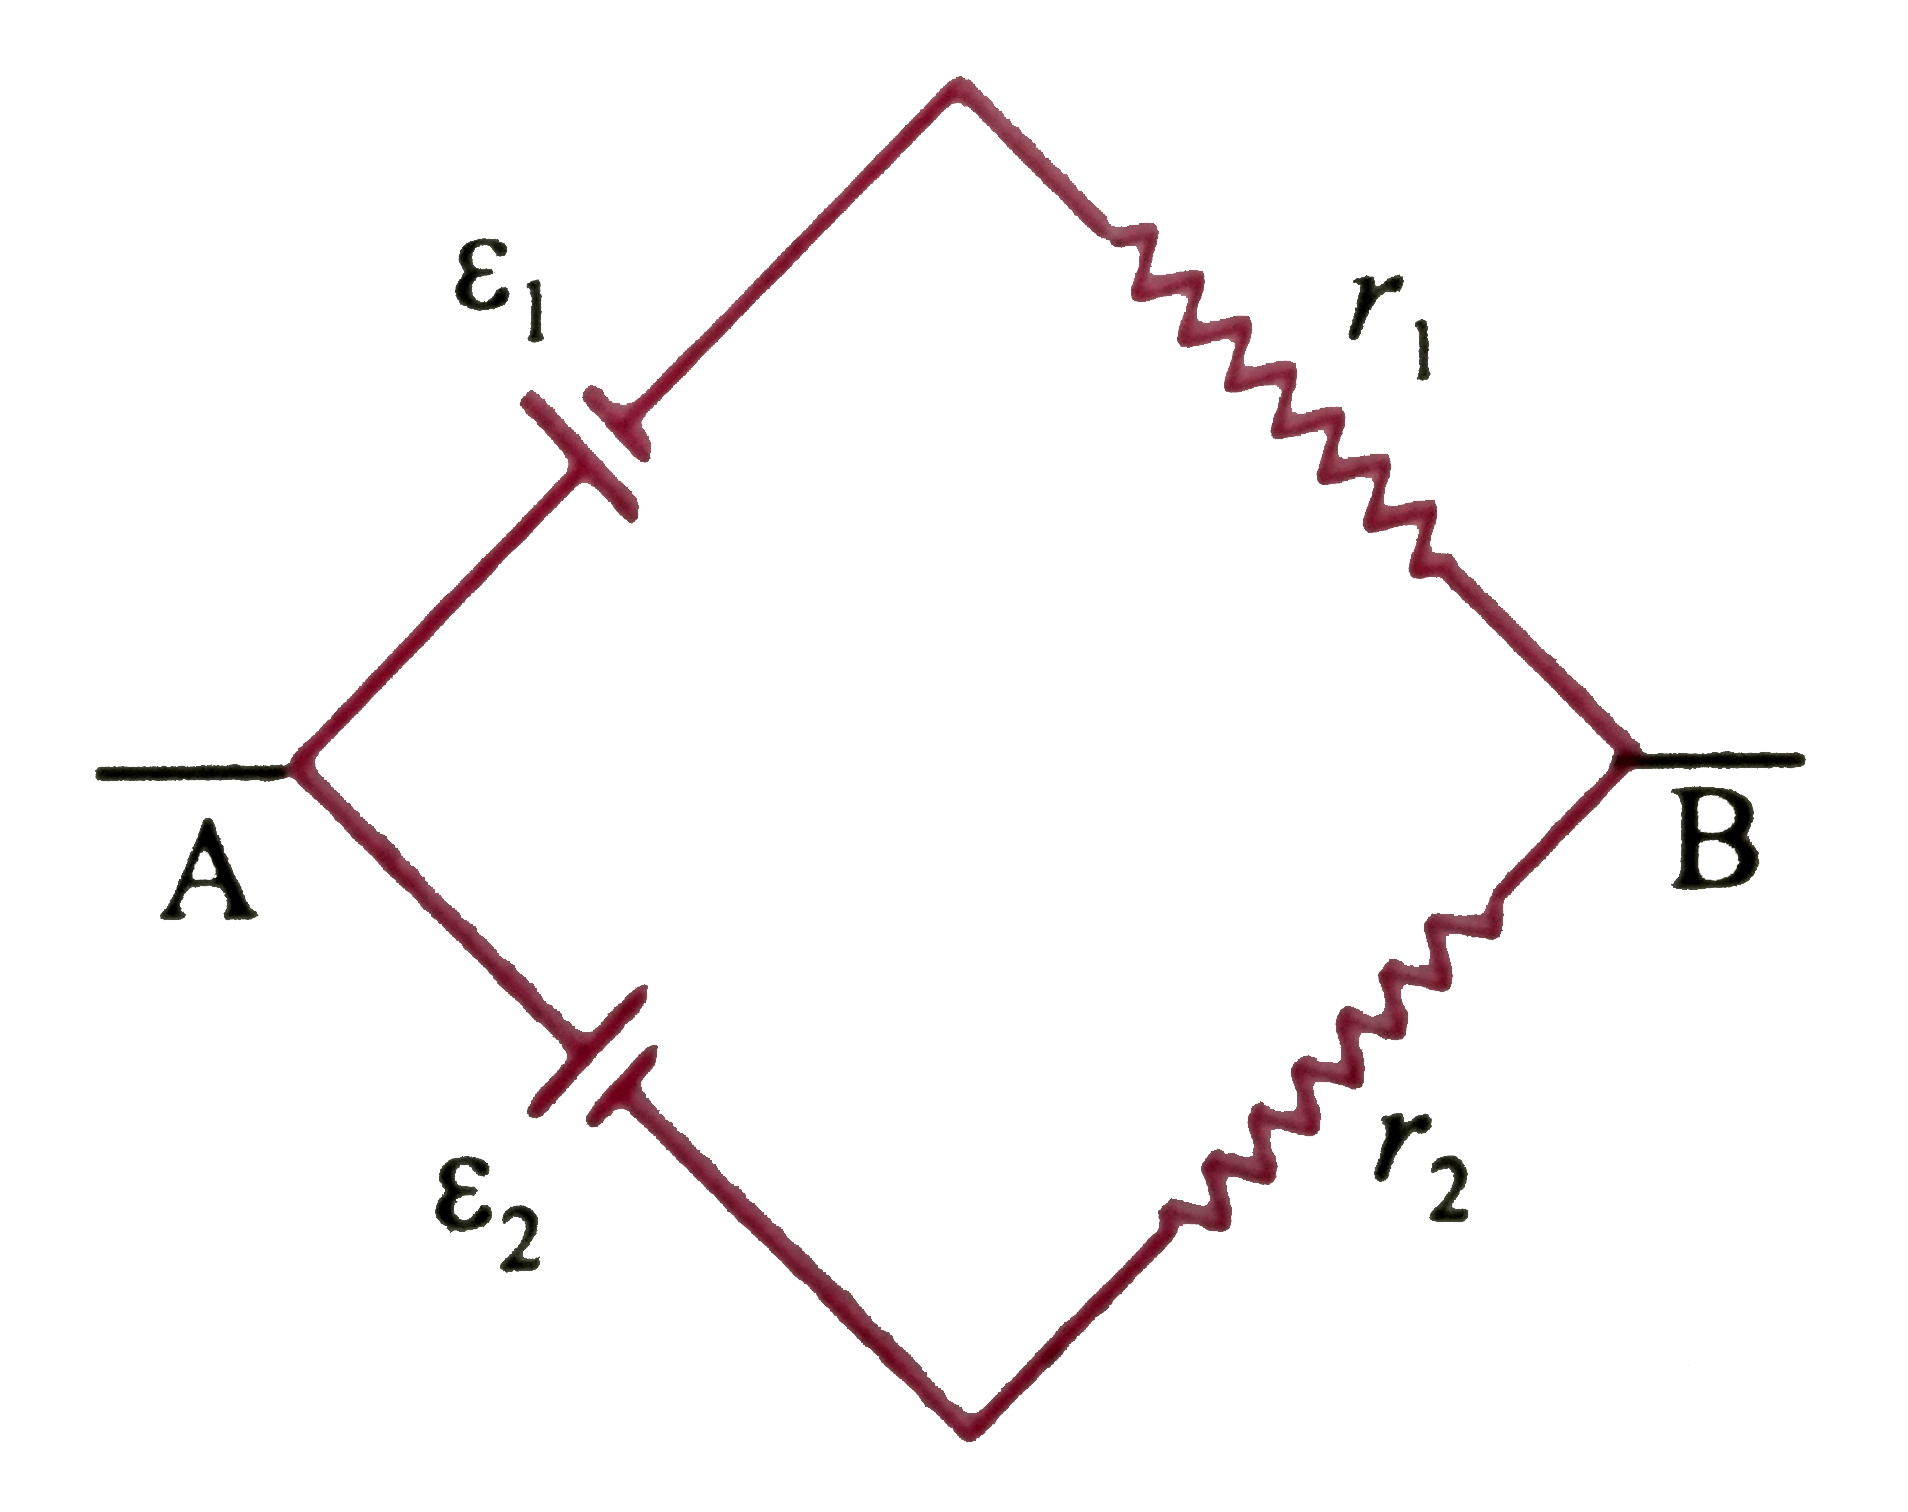 दो बैटरी  जिनका  वि वा बल epsilon(1)  व epsilon(2)एवं इनके आंतरिक क्रमशः r(1)  व r(2)    को निम्न  चित्रानुसार  समांतर क्रम में संयोजित किया गया है  ।epsilon (1) व epsilon(2) के मध्य समतुल्य  वि वा बल ε